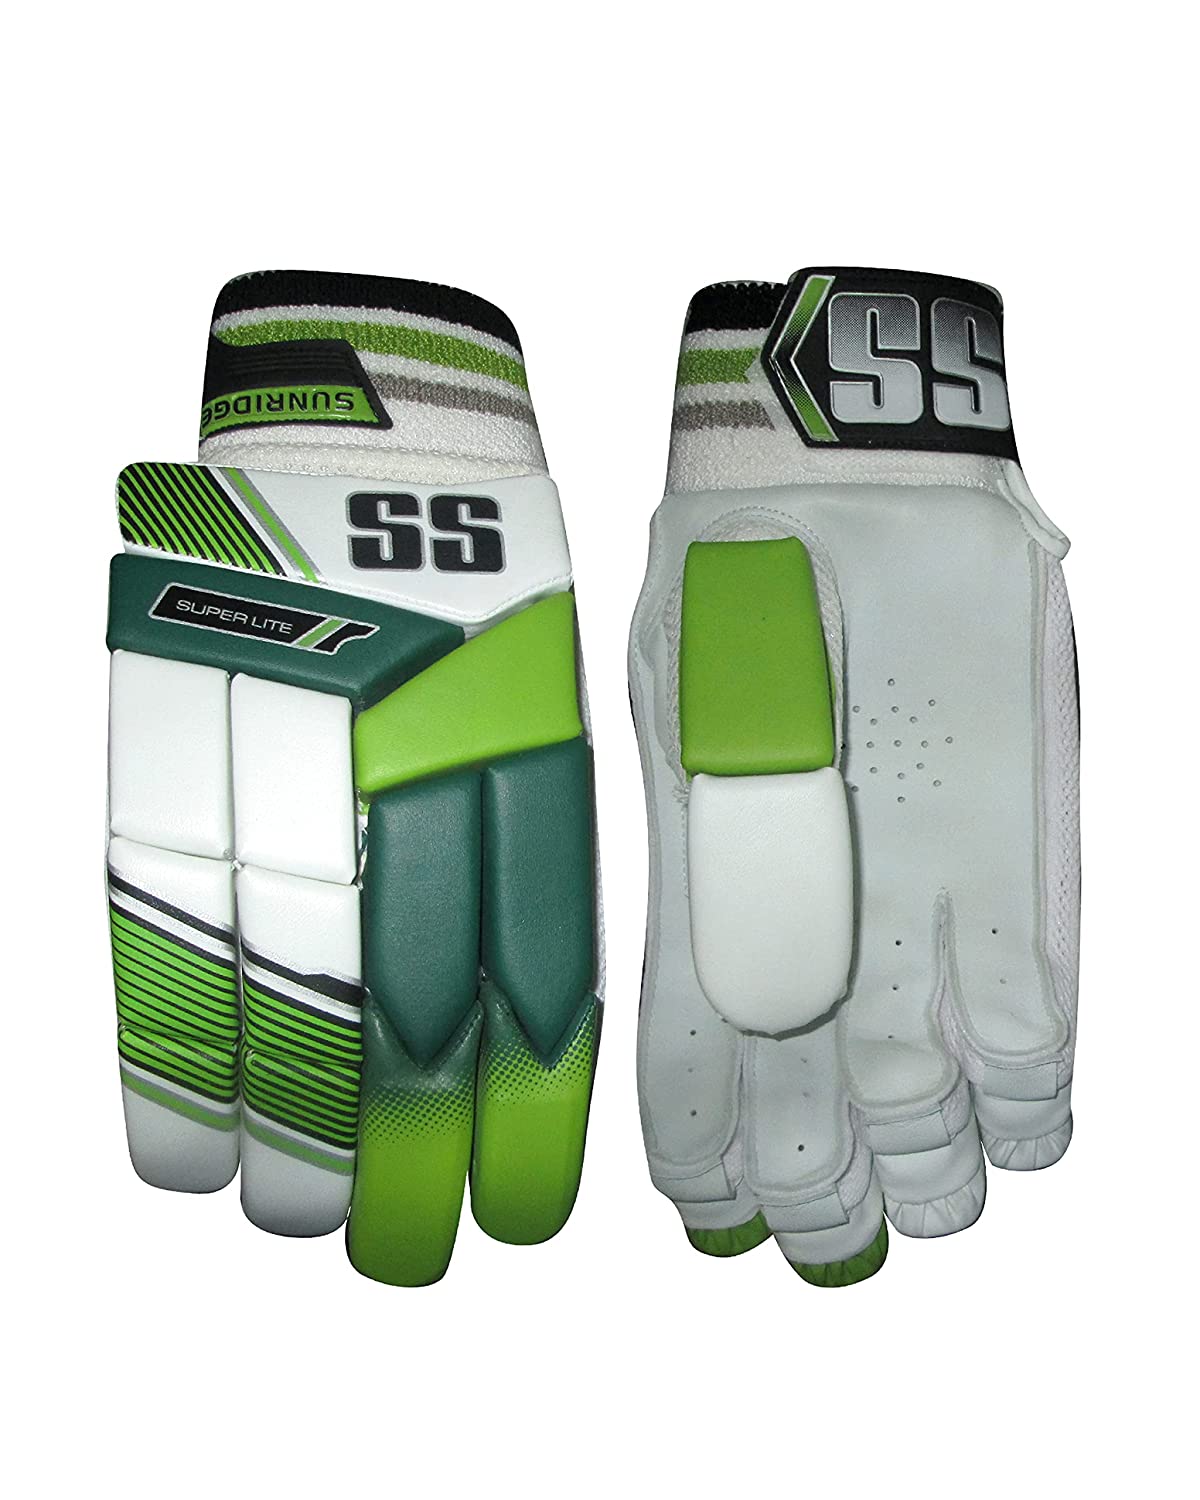 SS Superlite Cricket Left Hand Batting Gloves - Best Price online Prokicksports.com